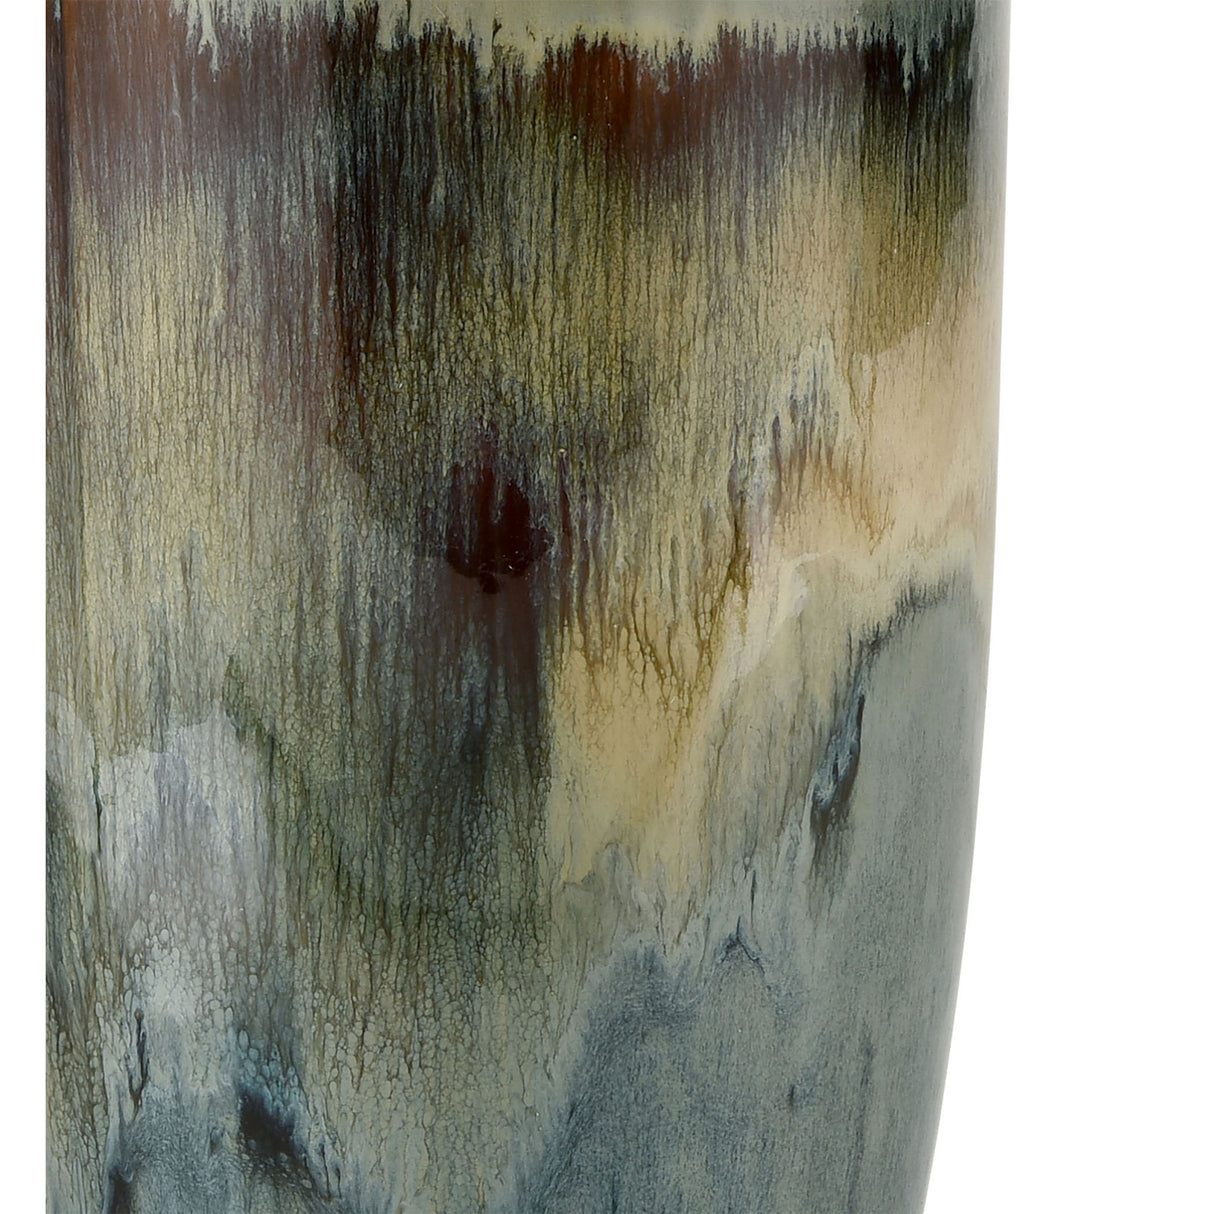 Elk S0017-8105 Roker Vase - Large